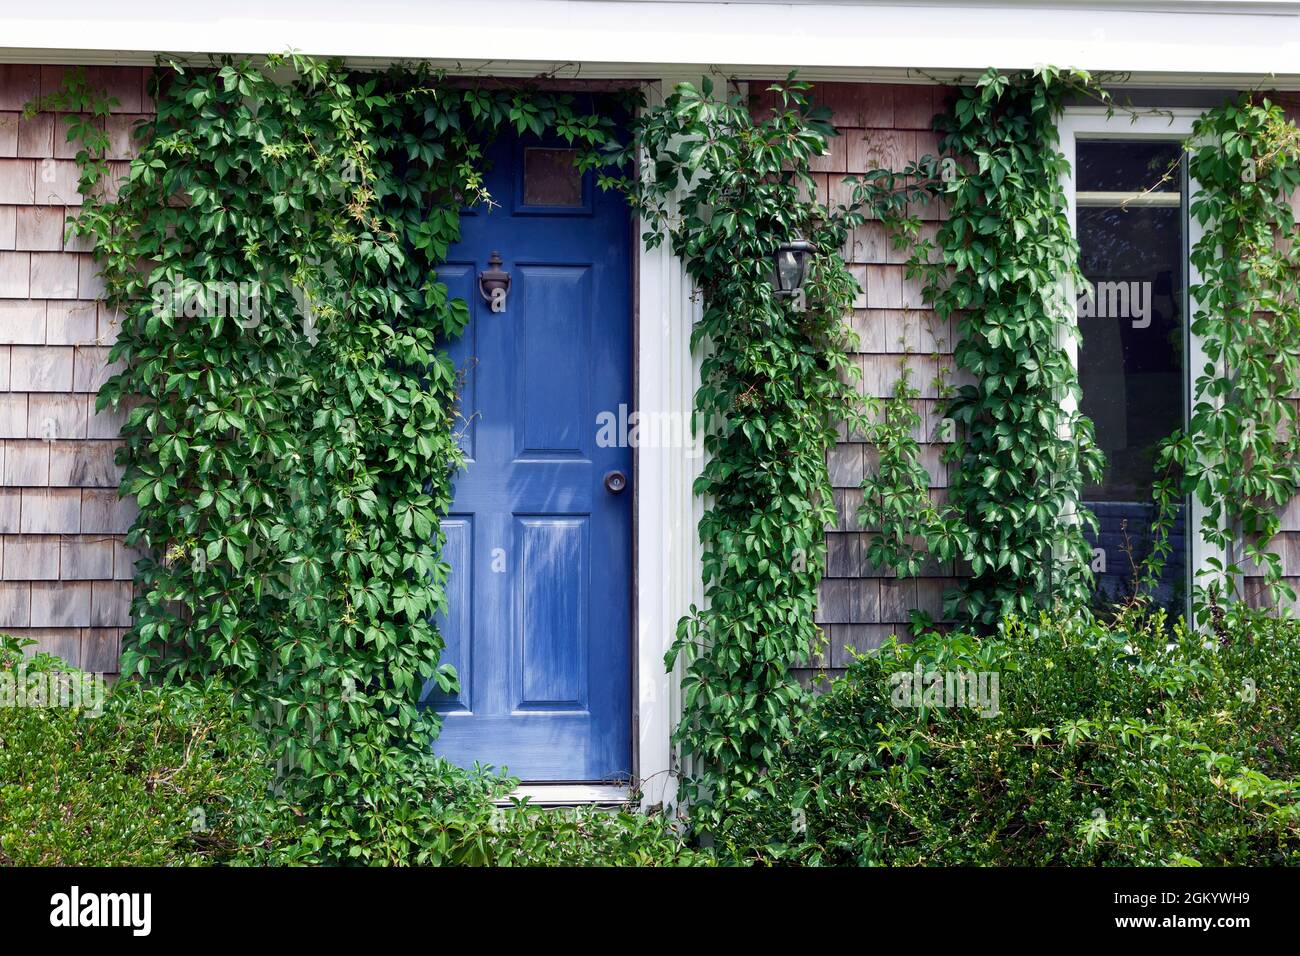 La puerta azul y la ventana de la casa enmarcada por una brillante hiedra verde. Foto de stock